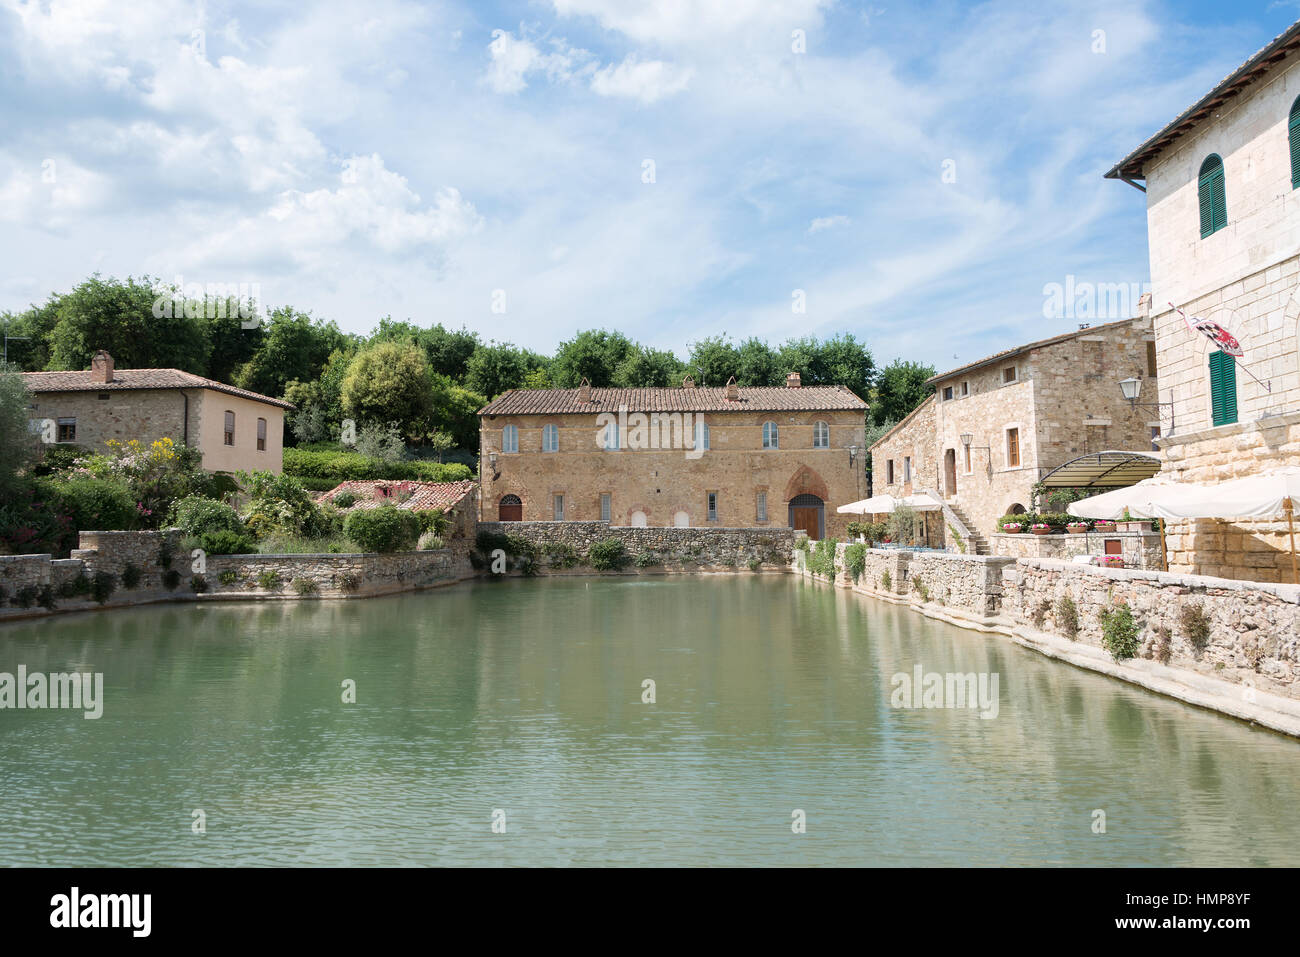 Il bagno termale caldo o antico romano piscina nel centro del villaggio di Bagno Vignoni, una piccola cittadina nella Val d'Orcia in Toscana, Italia. Foto Stock